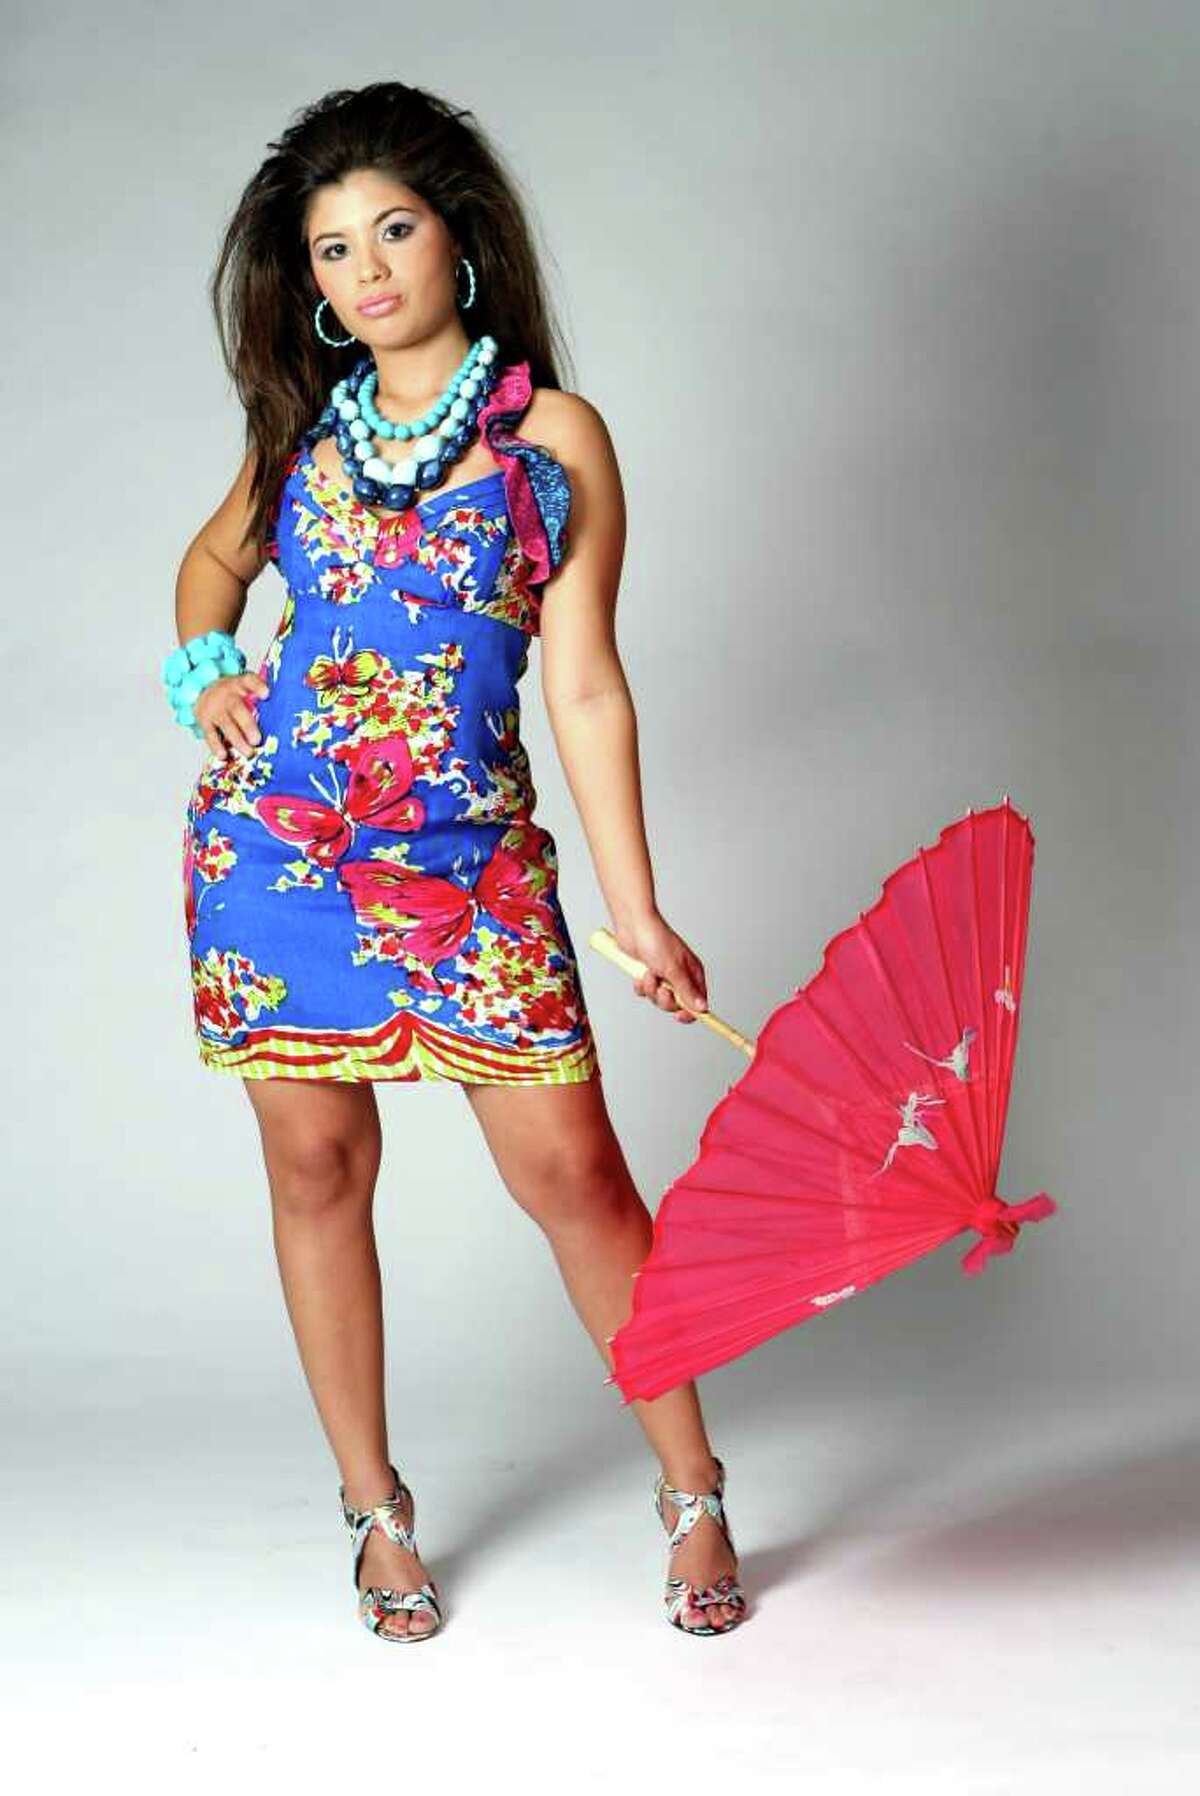 CONEXION: Karen Villarreal, 2009 Hottest Latina. HELEN L. MONTOYA/hmontoya@conexionsa.com